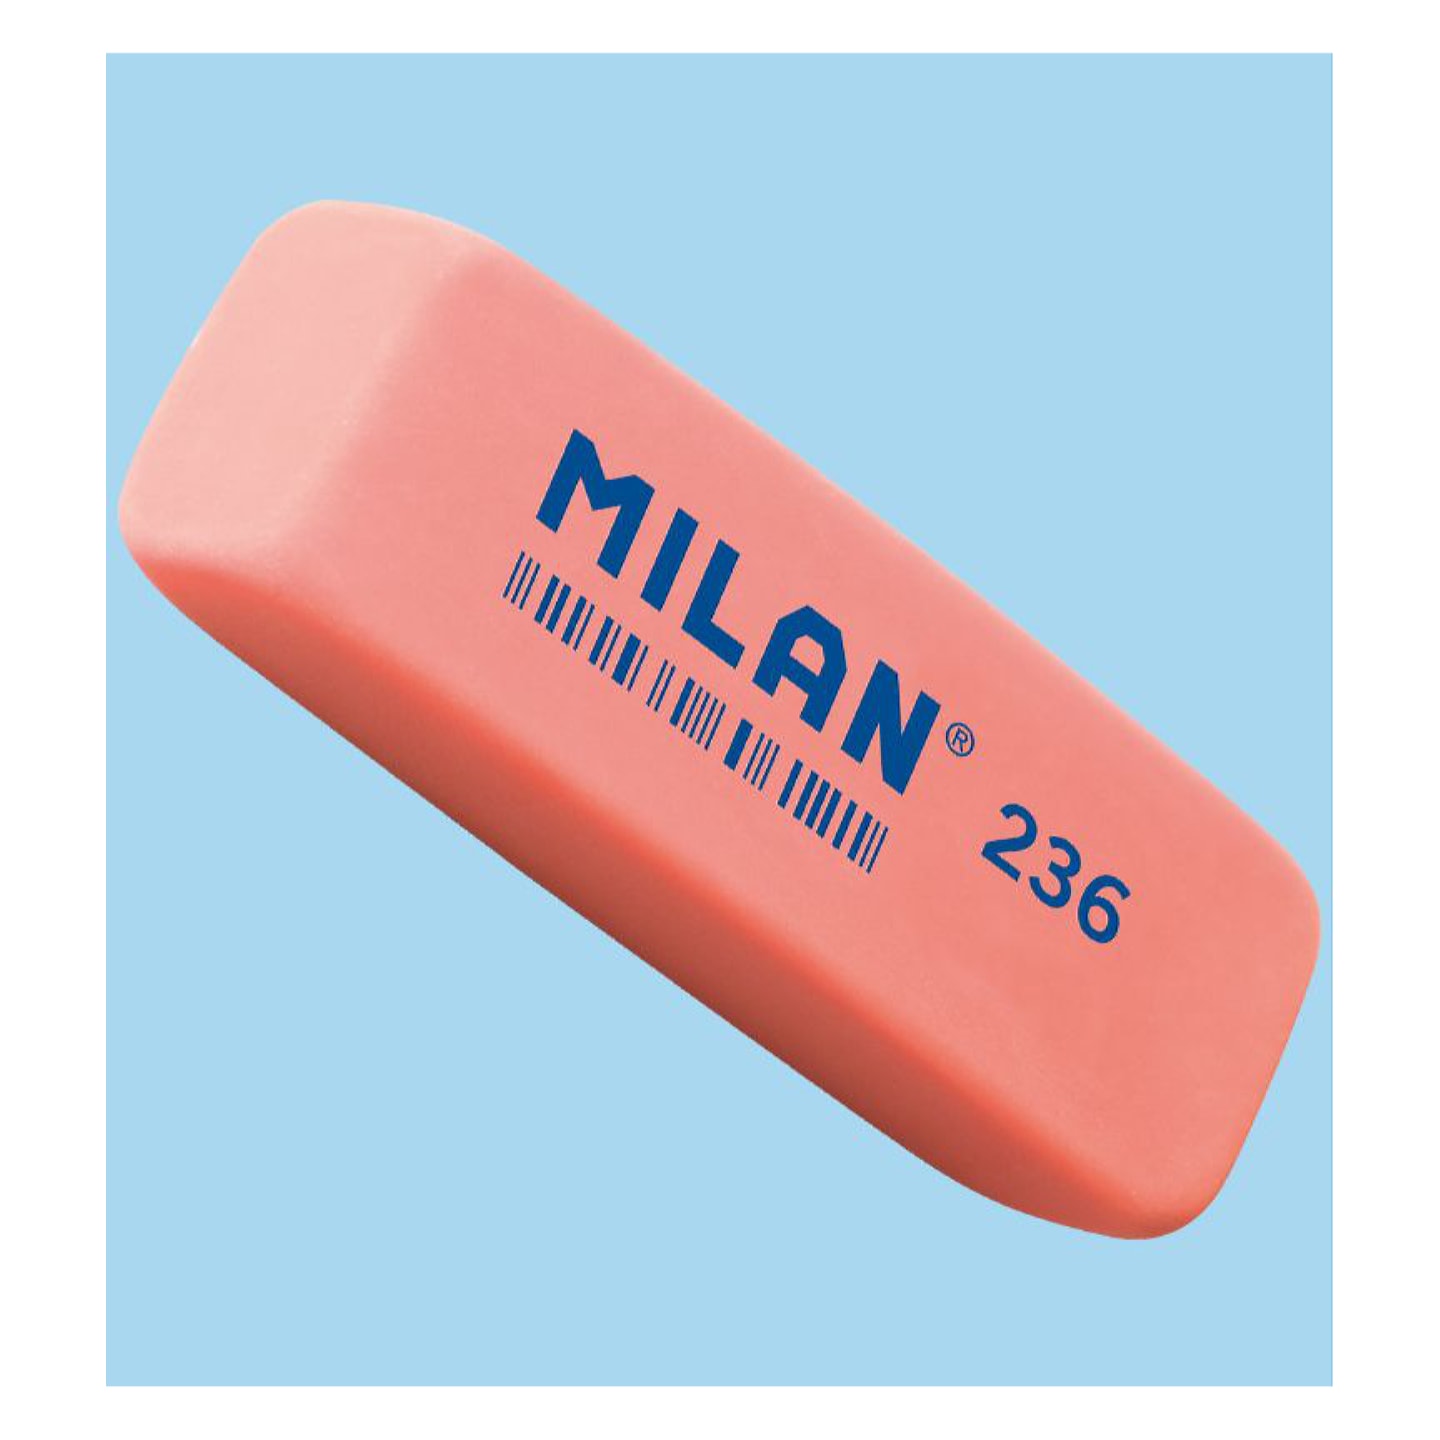 Ластик MILAN 236 прямоугольный скошенный 56*19*9мм пластик для графита цвета в ассортименте (флюоресцентный) 36 шт/упак